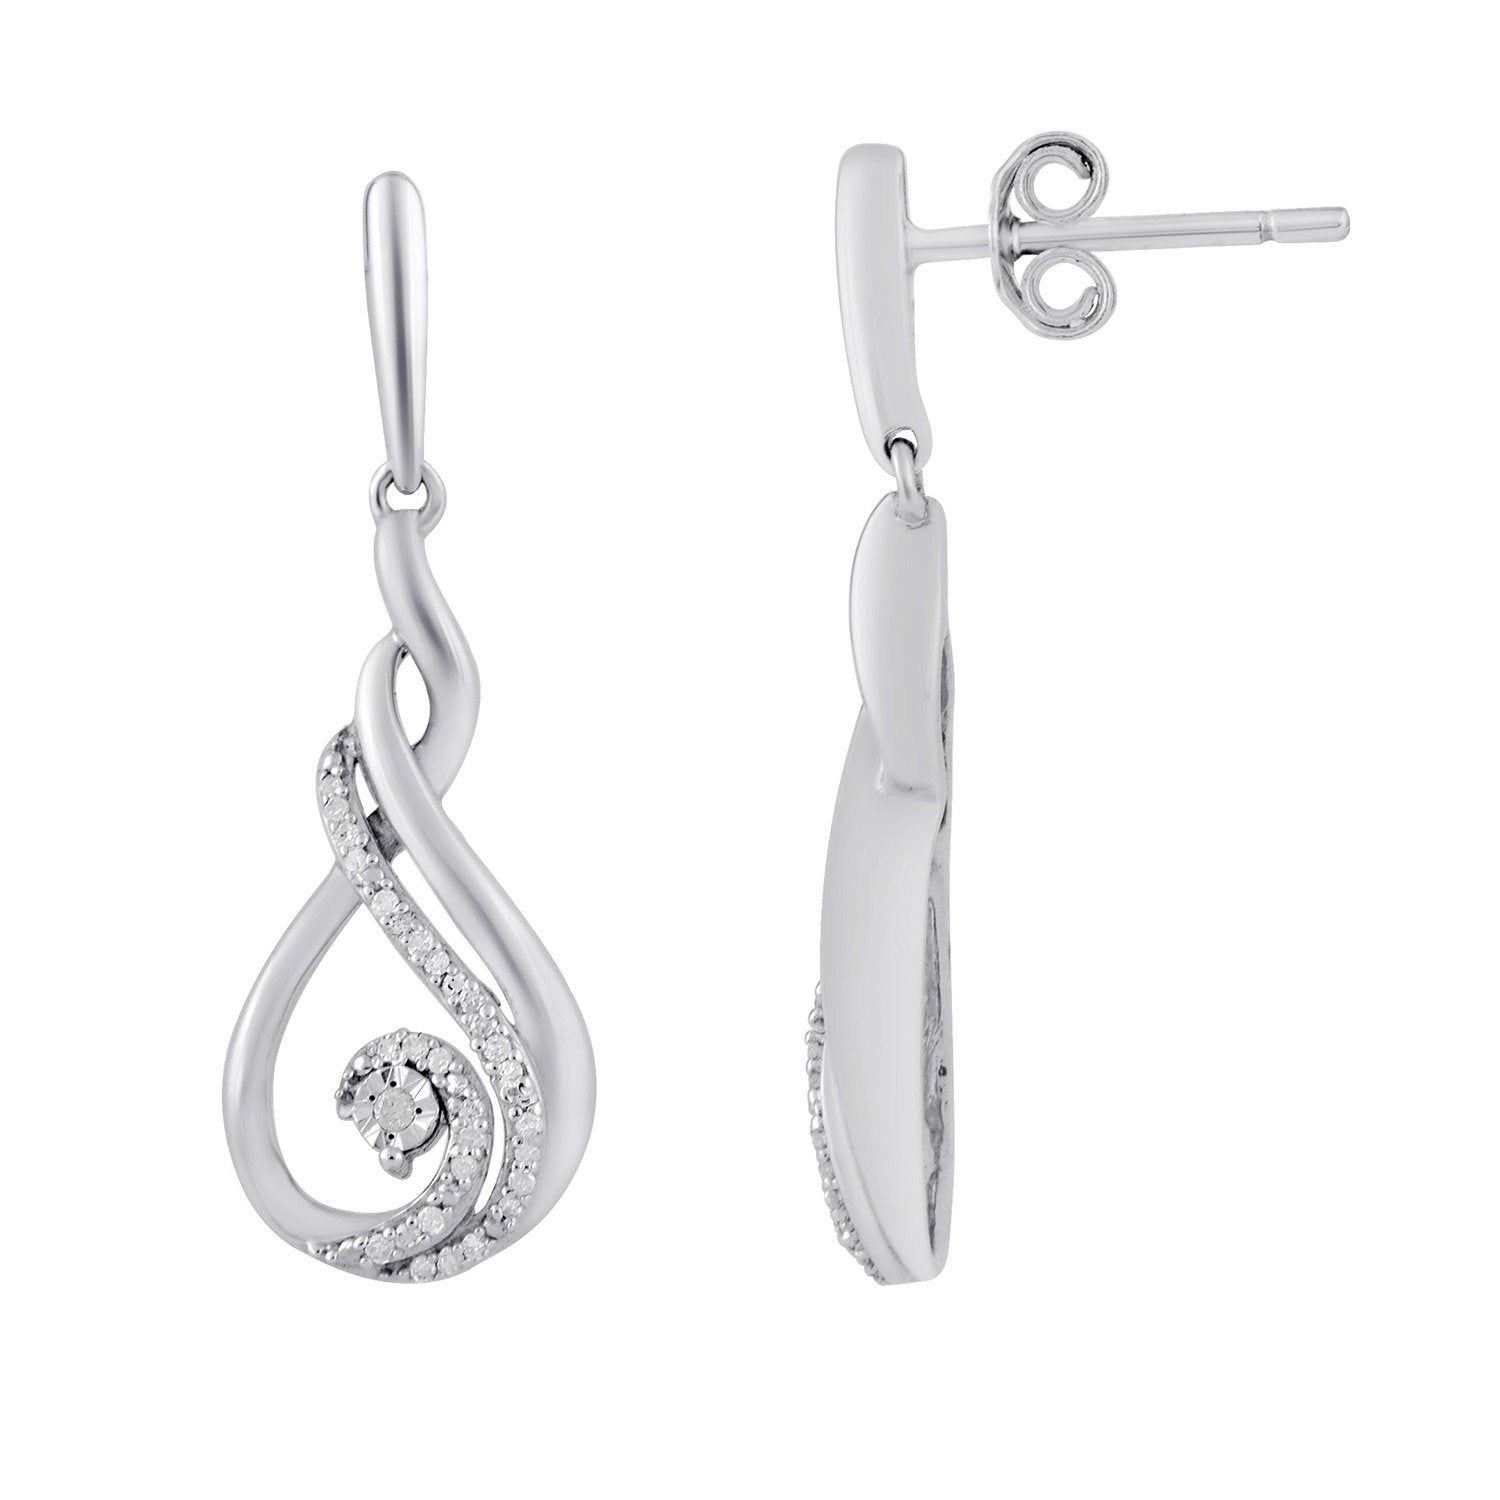 Mirage Swirl Drop Stud Earrings with 0.10ct of Diamonds in Sterling Silver Earrings Bevilles 